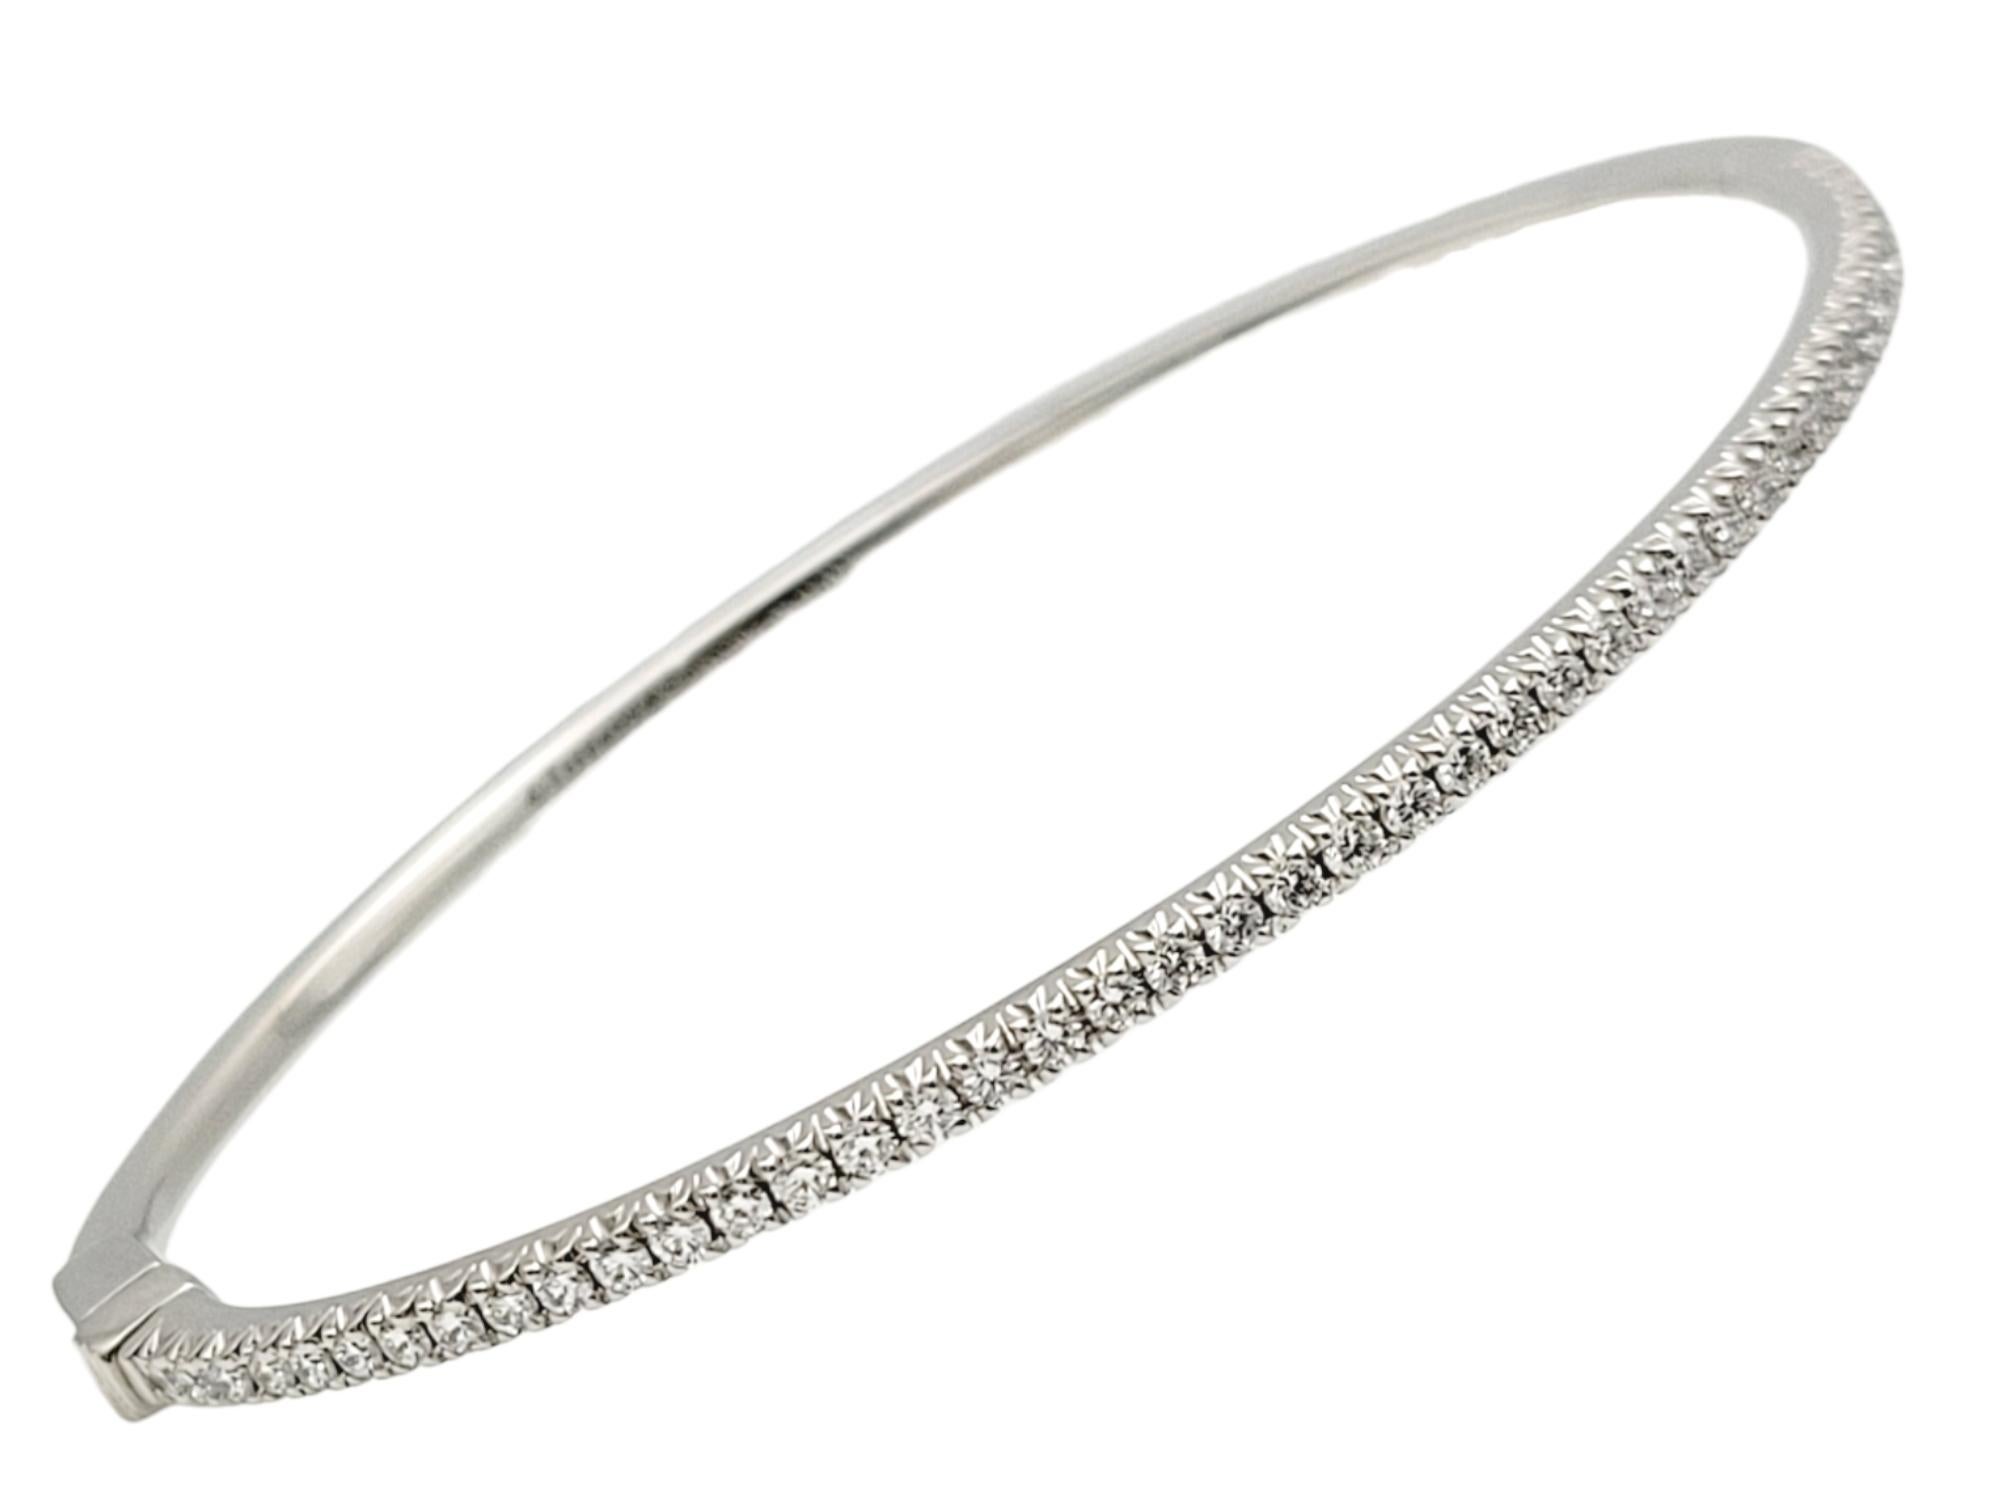 Ce magnifique bracelet en diamants de Tiffany & Co. est une pièce exceptionnelle de la célèbre Collectional de Tiffany. Ce bracelet présente un design moderne et épuré qui rappelle l'horizon scintillant d'une ville la nuit. C'est le summum de